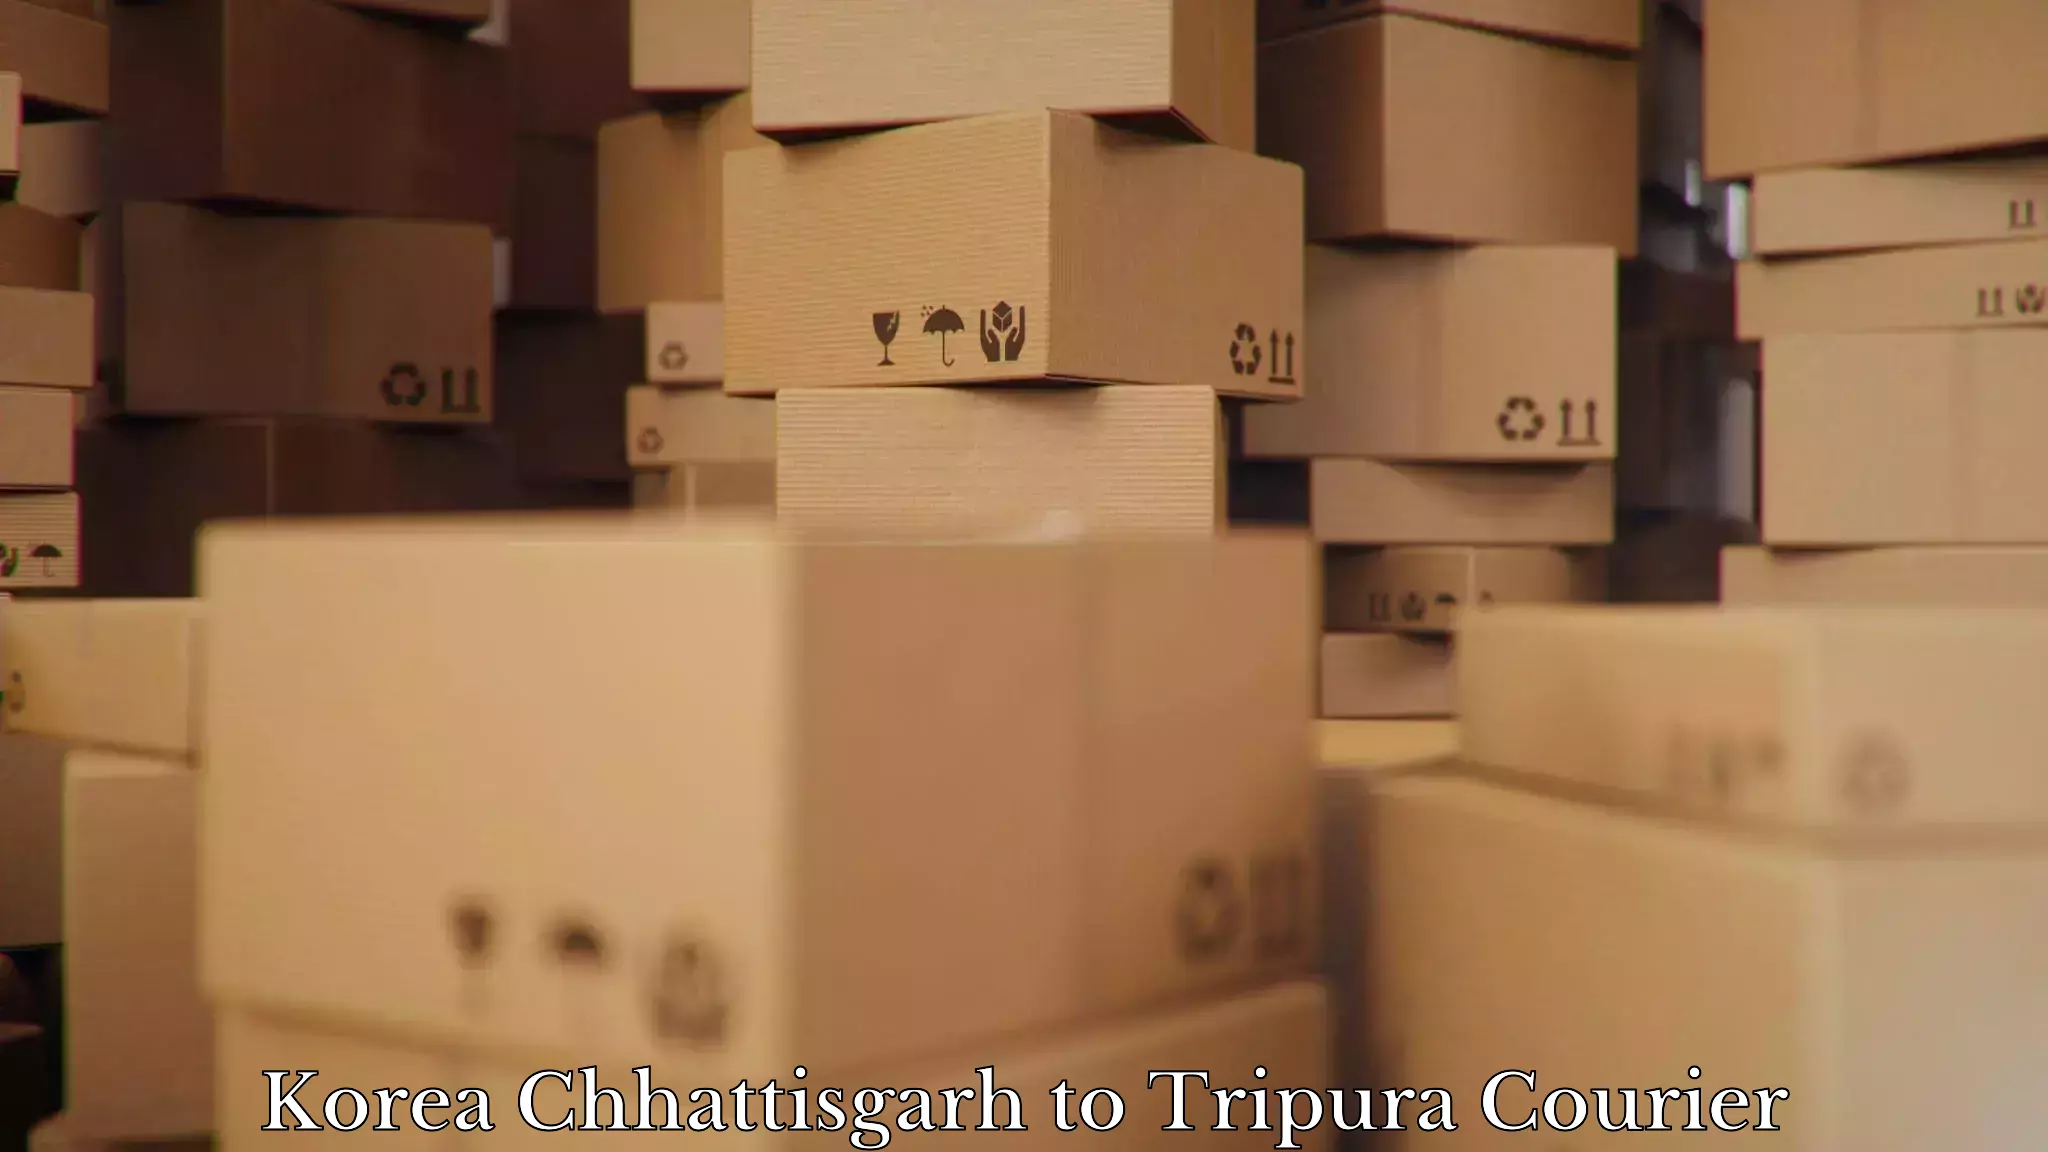 Household goods transport service Korea Chhattisgarh to Tripura